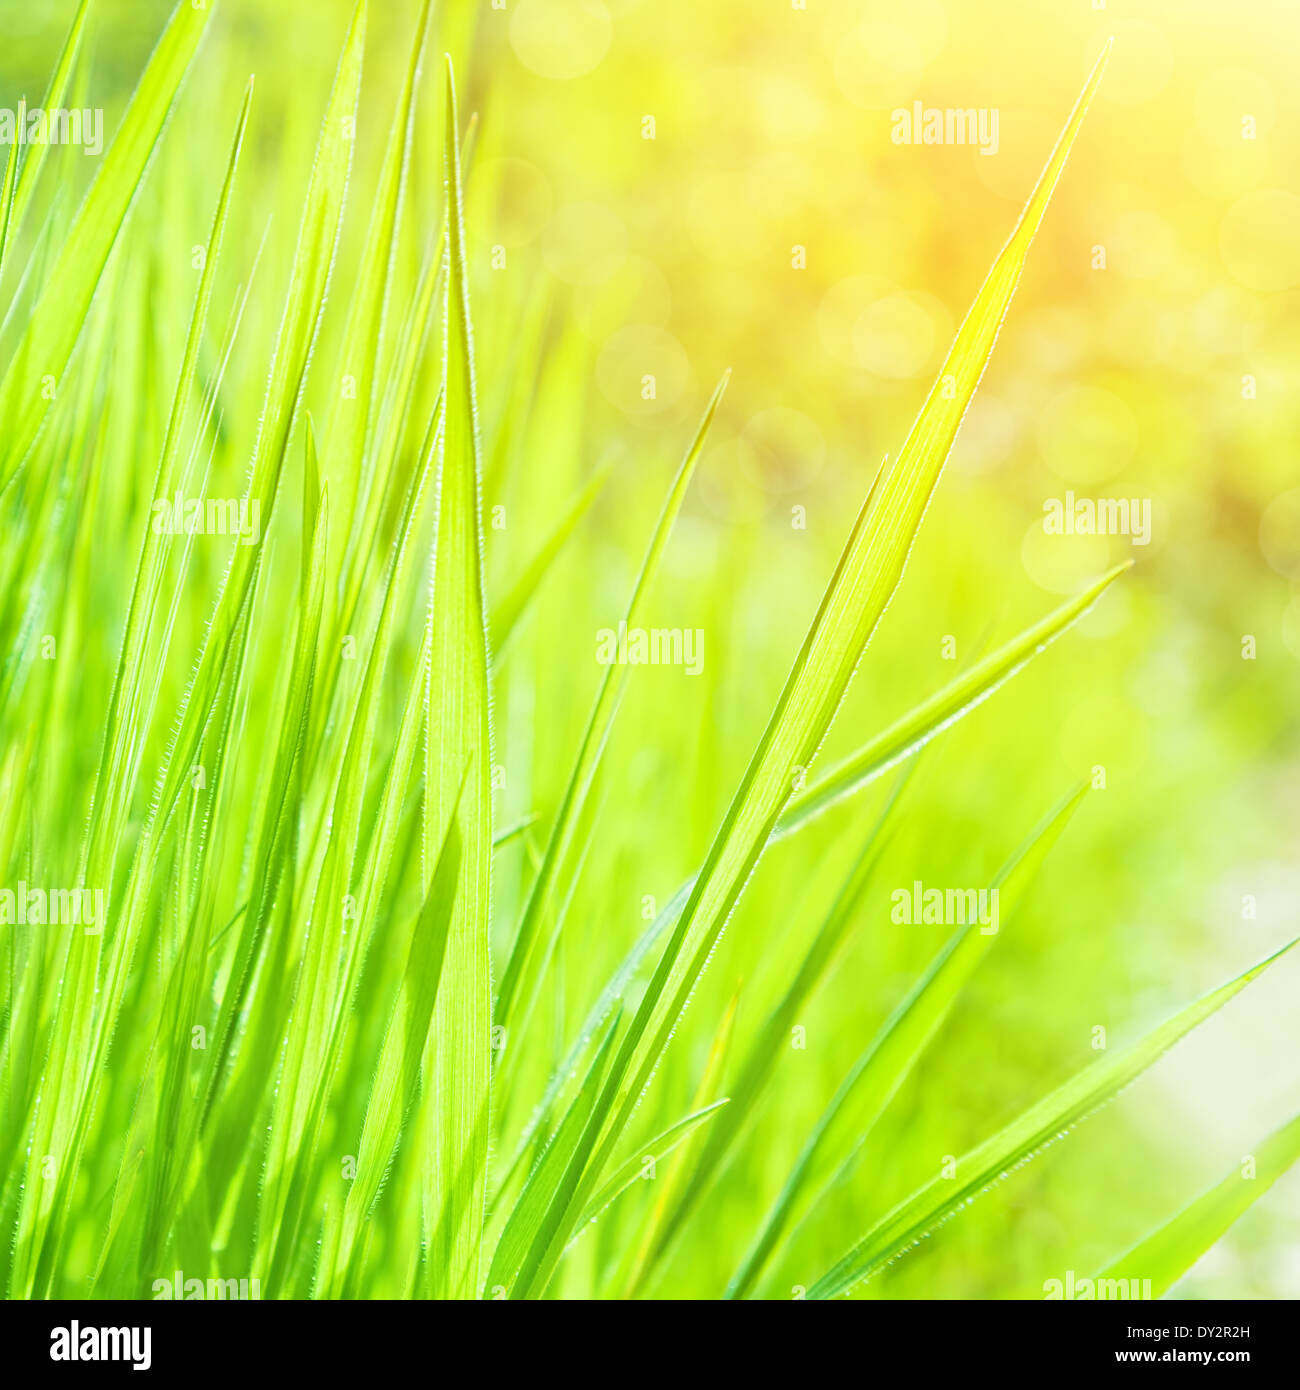 Abstract natural background, l'herbe fraîche sur fond vert à la frontière floue, belle nature printemps, saison printemps concept Banque D'Images